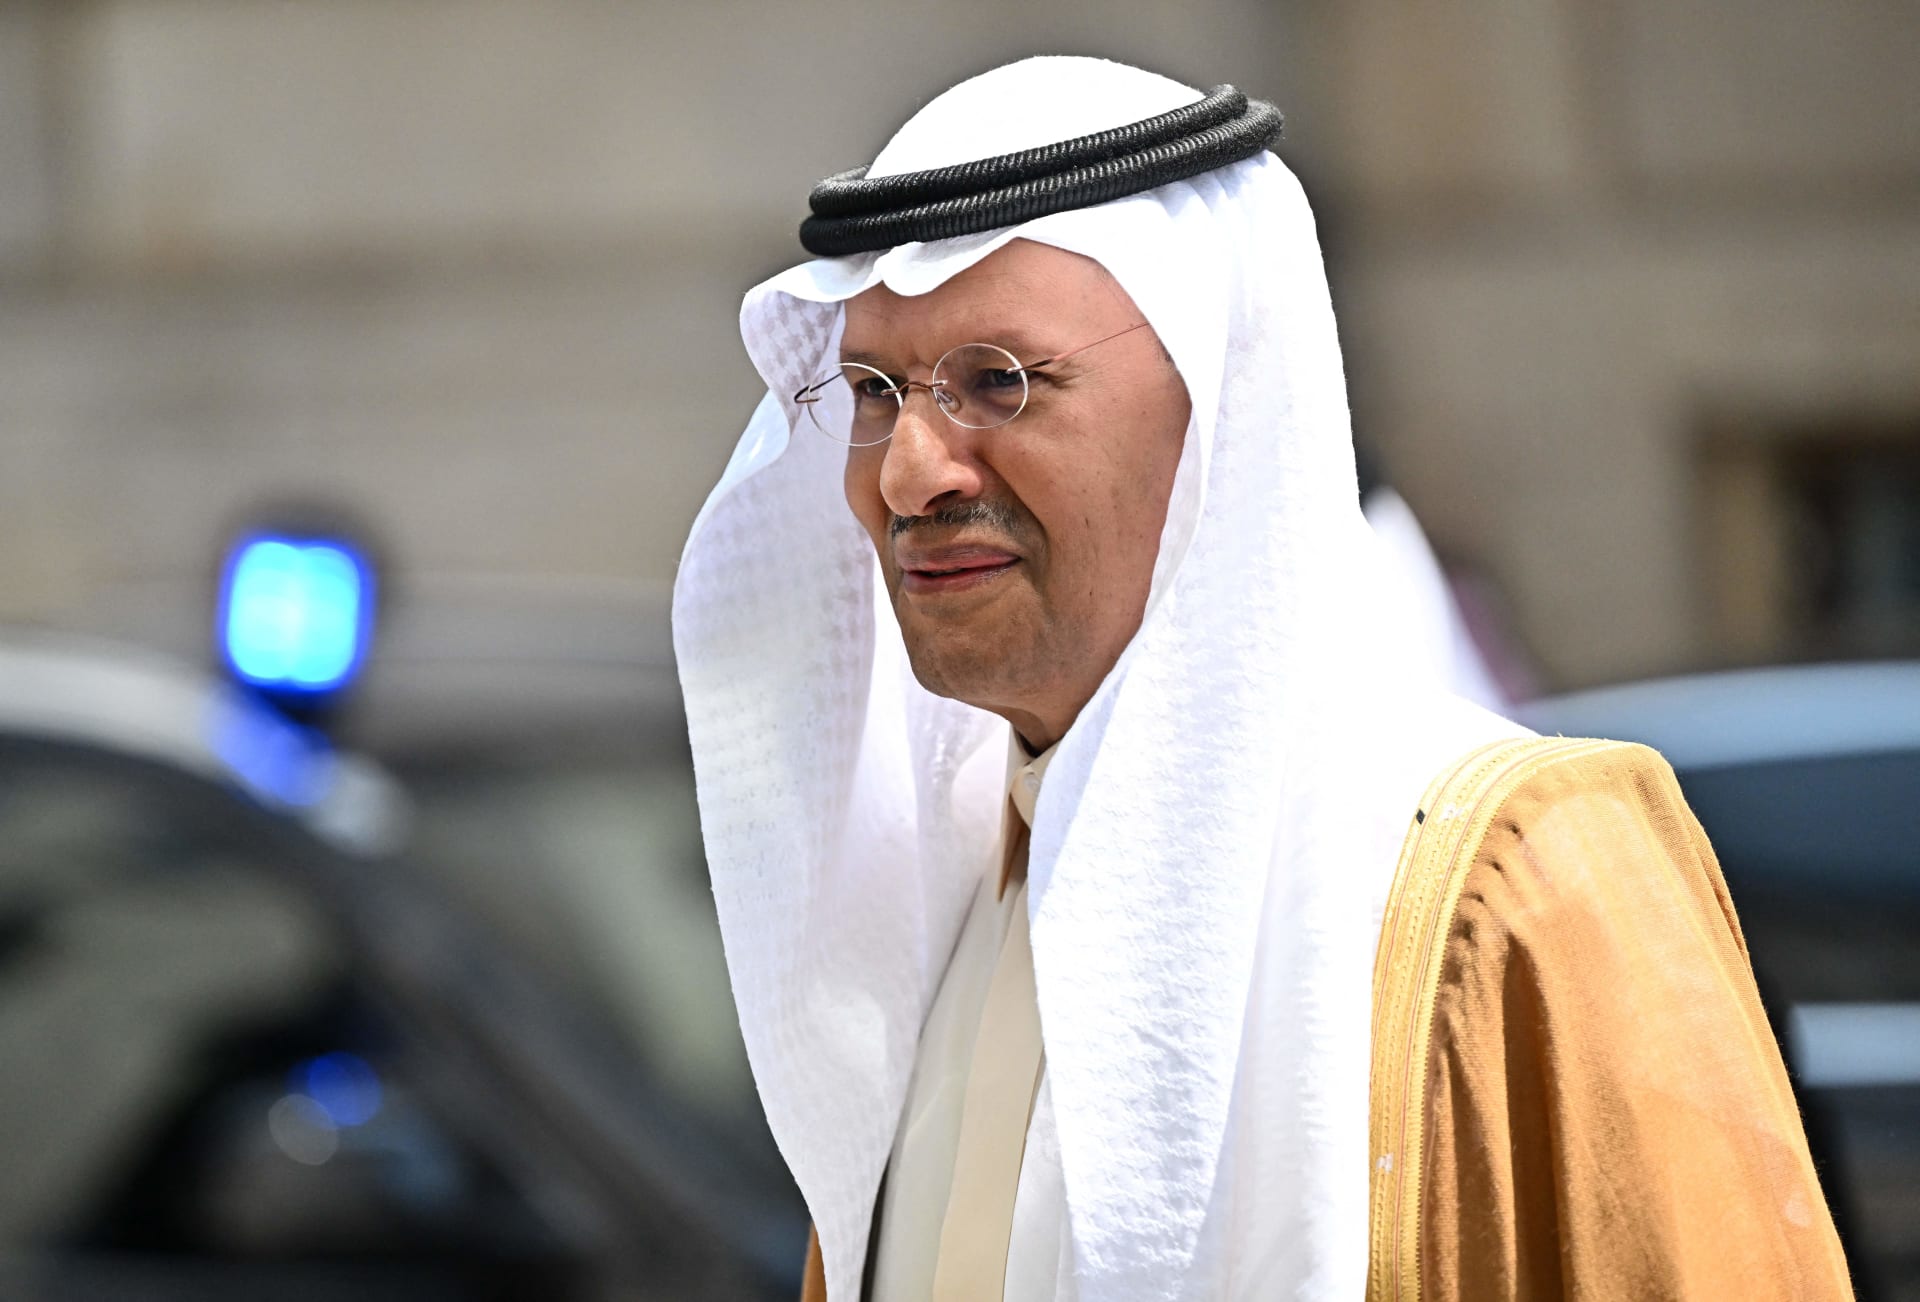 تصريحات وزير الطاقة السعودي على اتباع ساسة "إما أن تكون معنا أو مع غيرنا" تثير تفاعلا